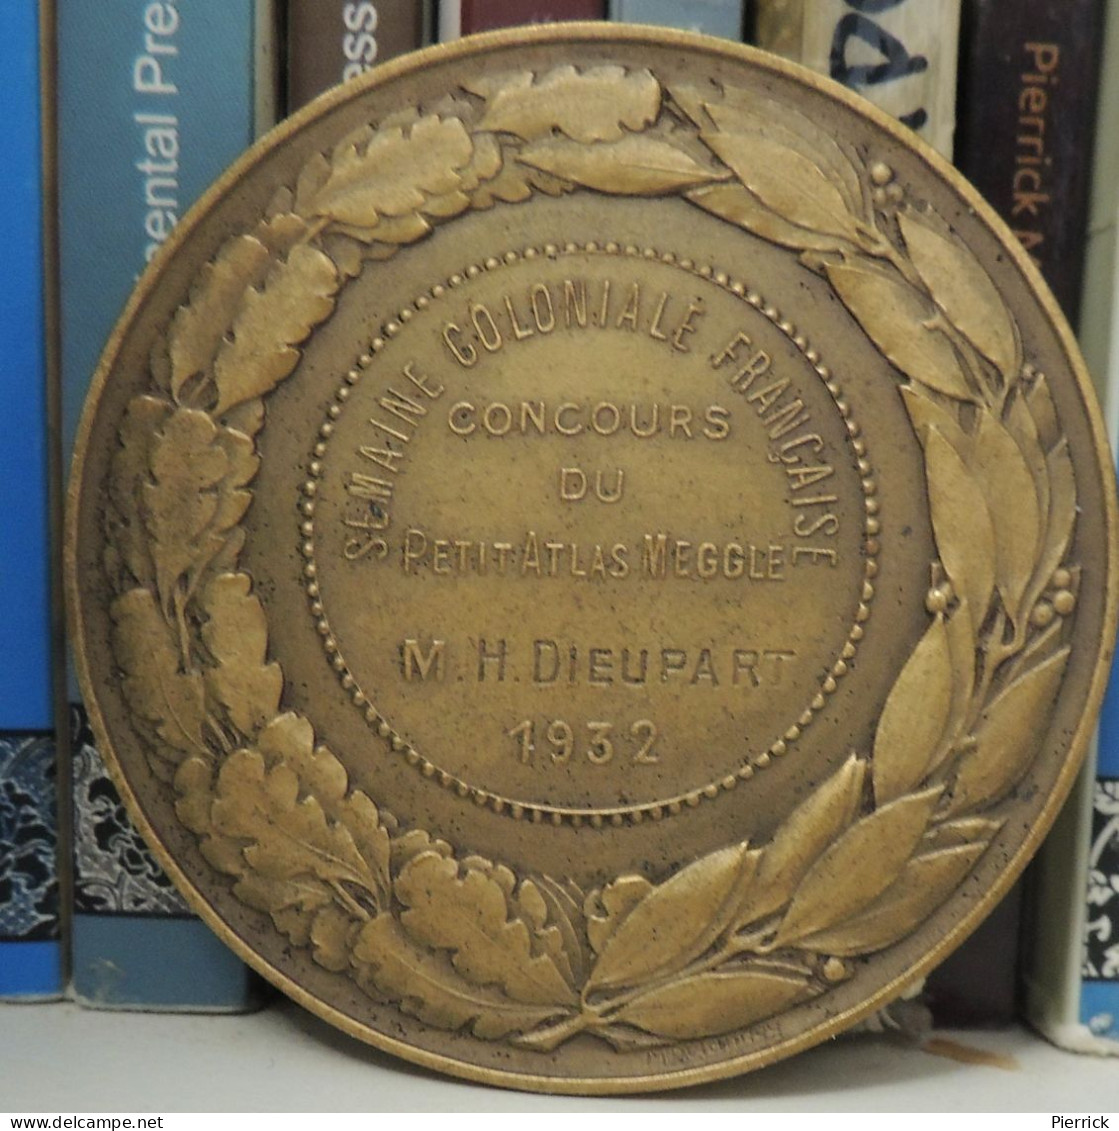 Médaille Semaine Coloniale Française Du Petit Atlas Français Megglé, Bronze, L. Desvignes 1932 - Professionals / Firms